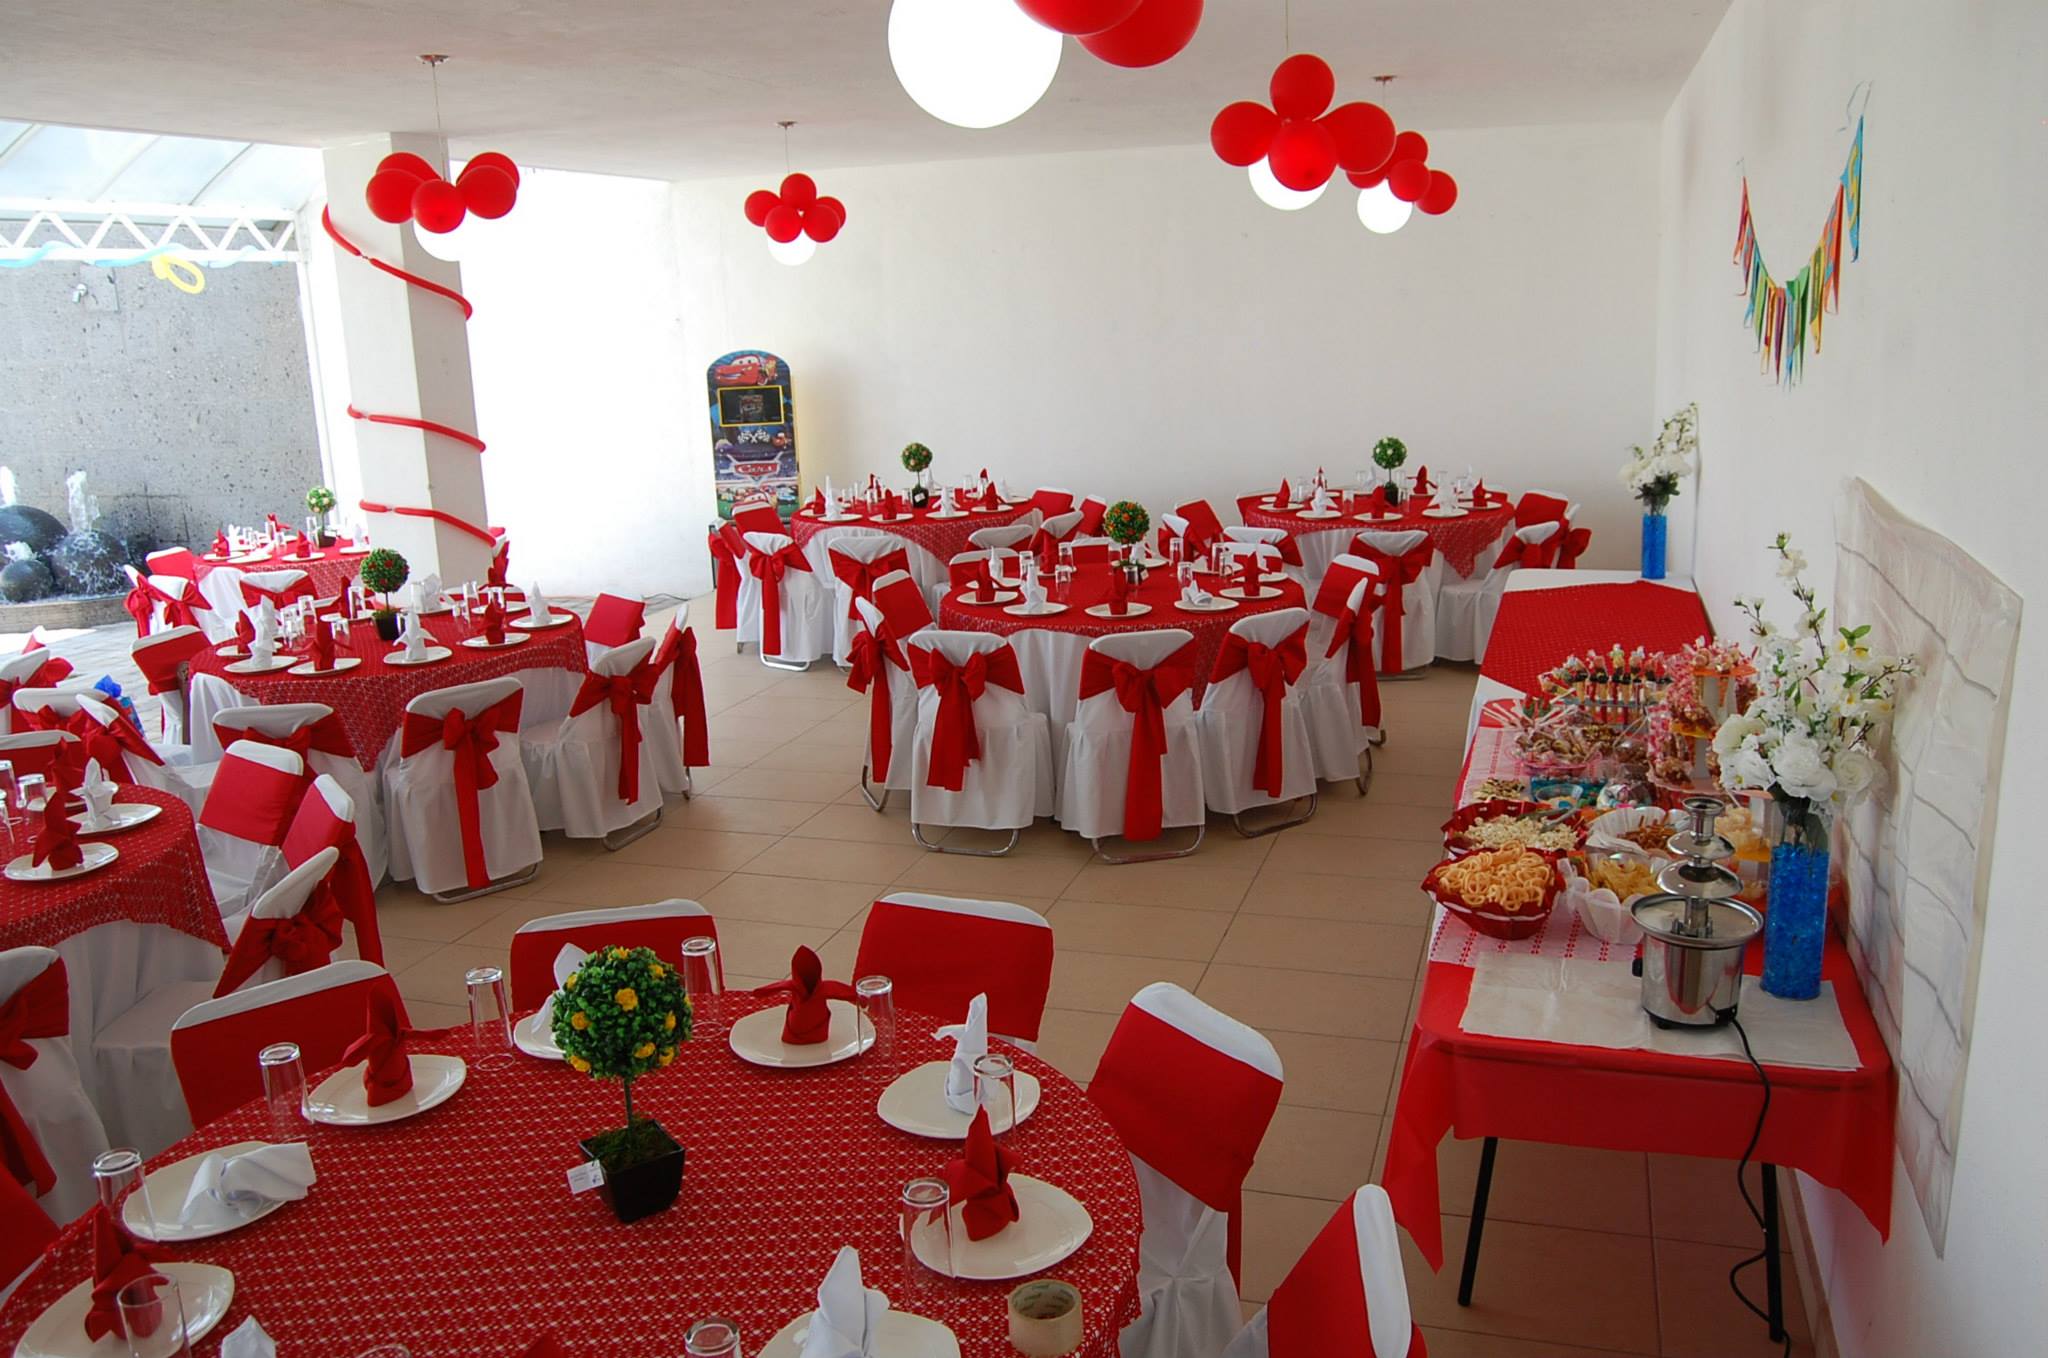 Decoración en color rojo para eventos y fiestas